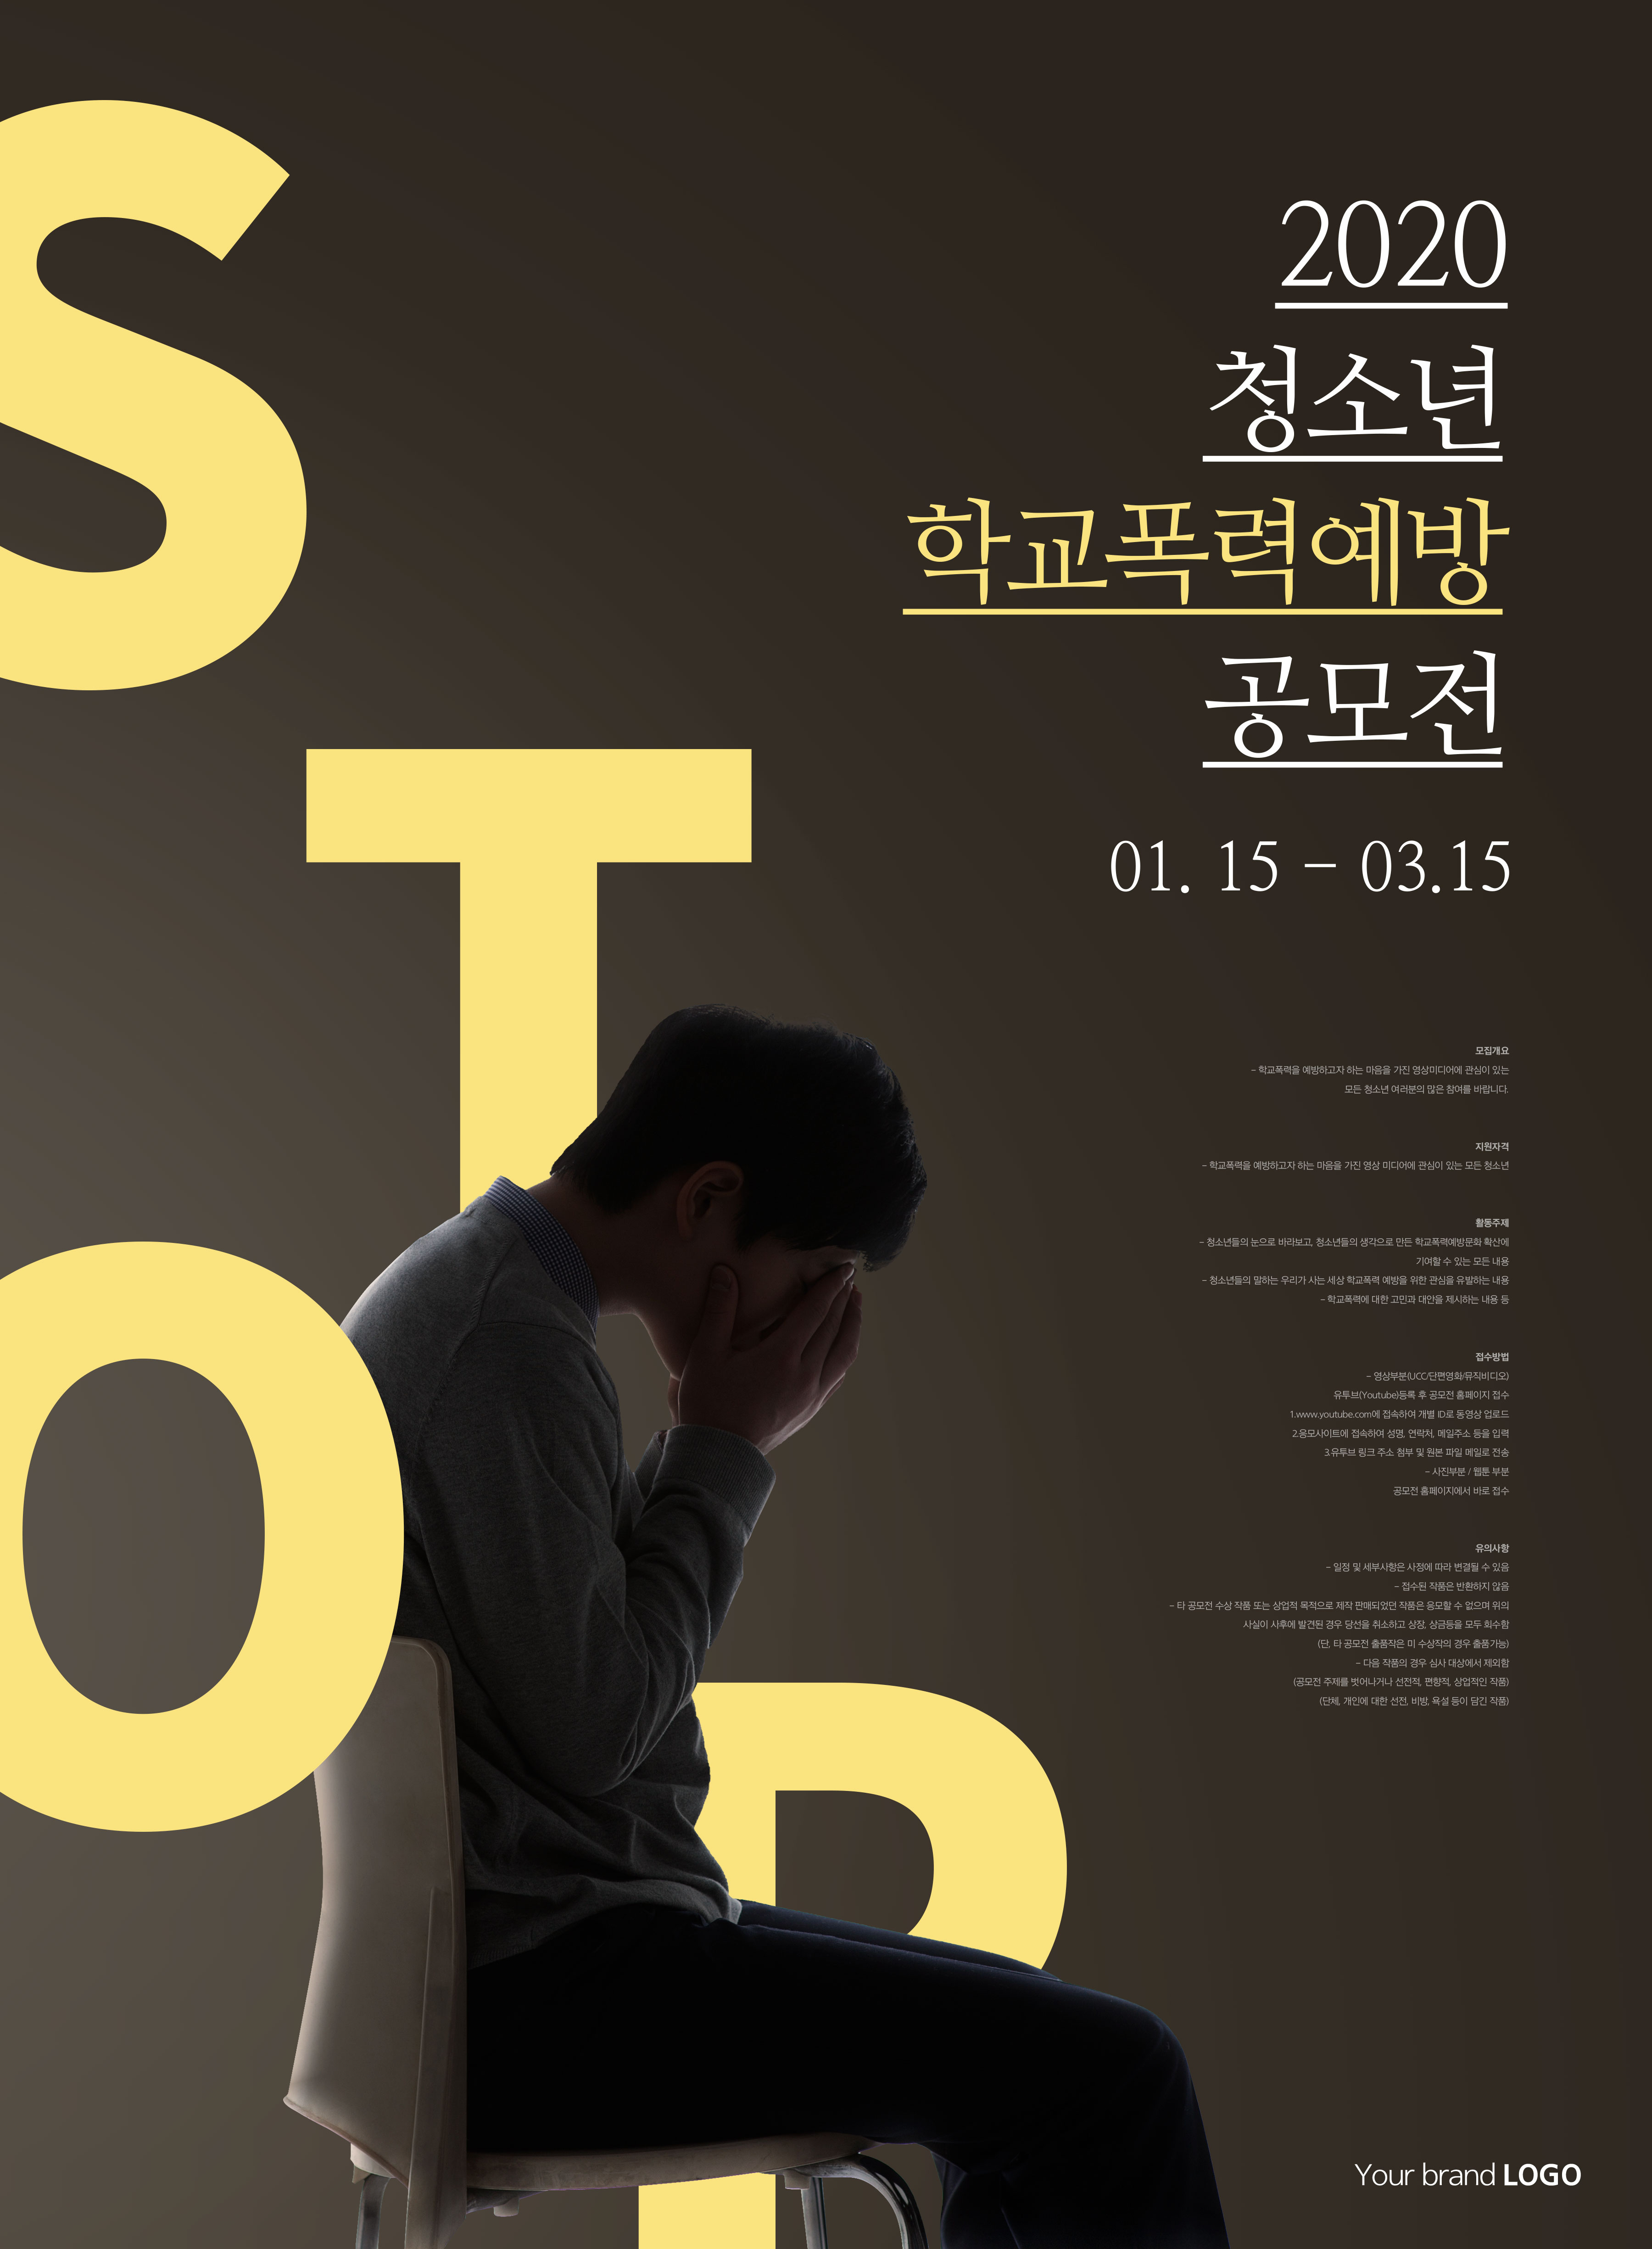 青年时期预防学校暴力主题宣传海报韩国素材插图